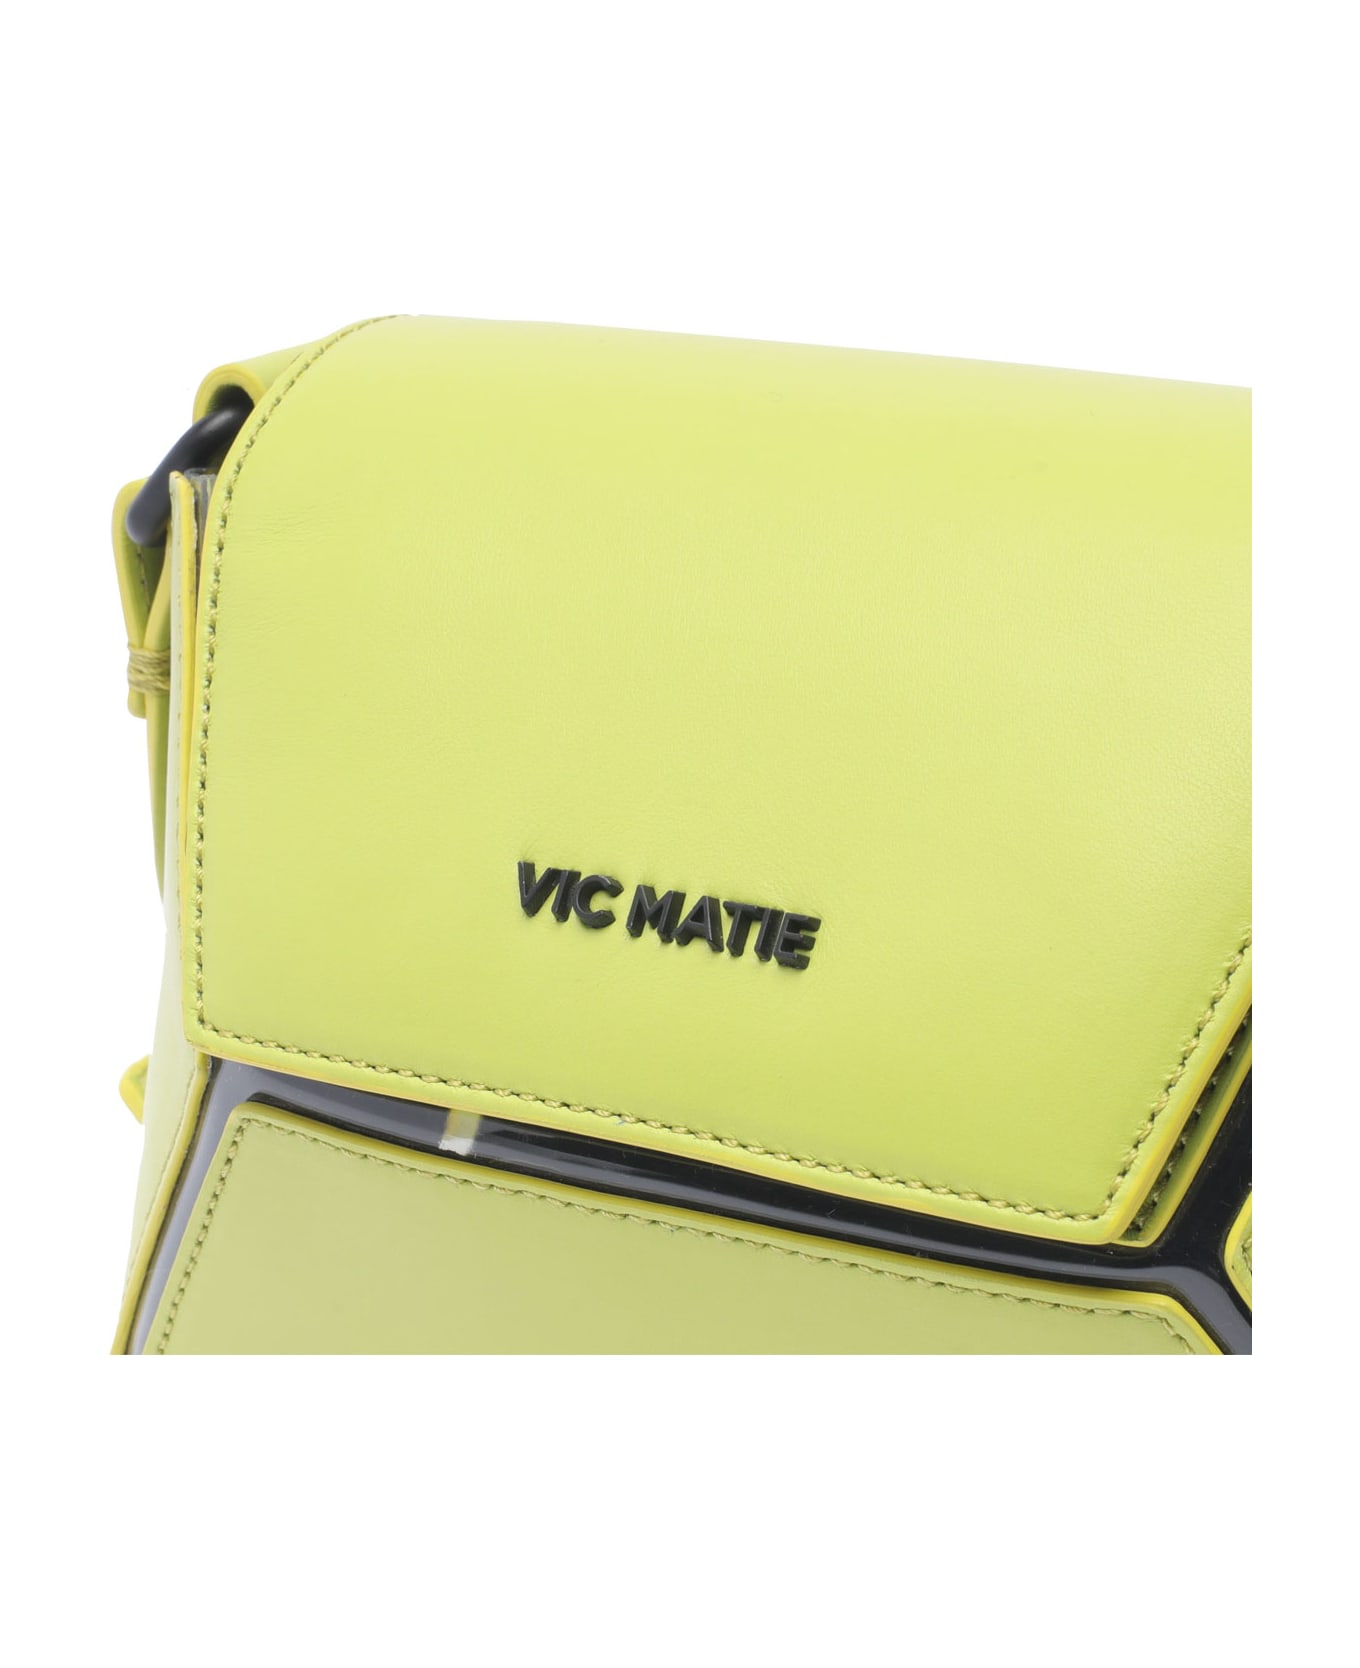 Vic Matié Crossbody Bag - Green